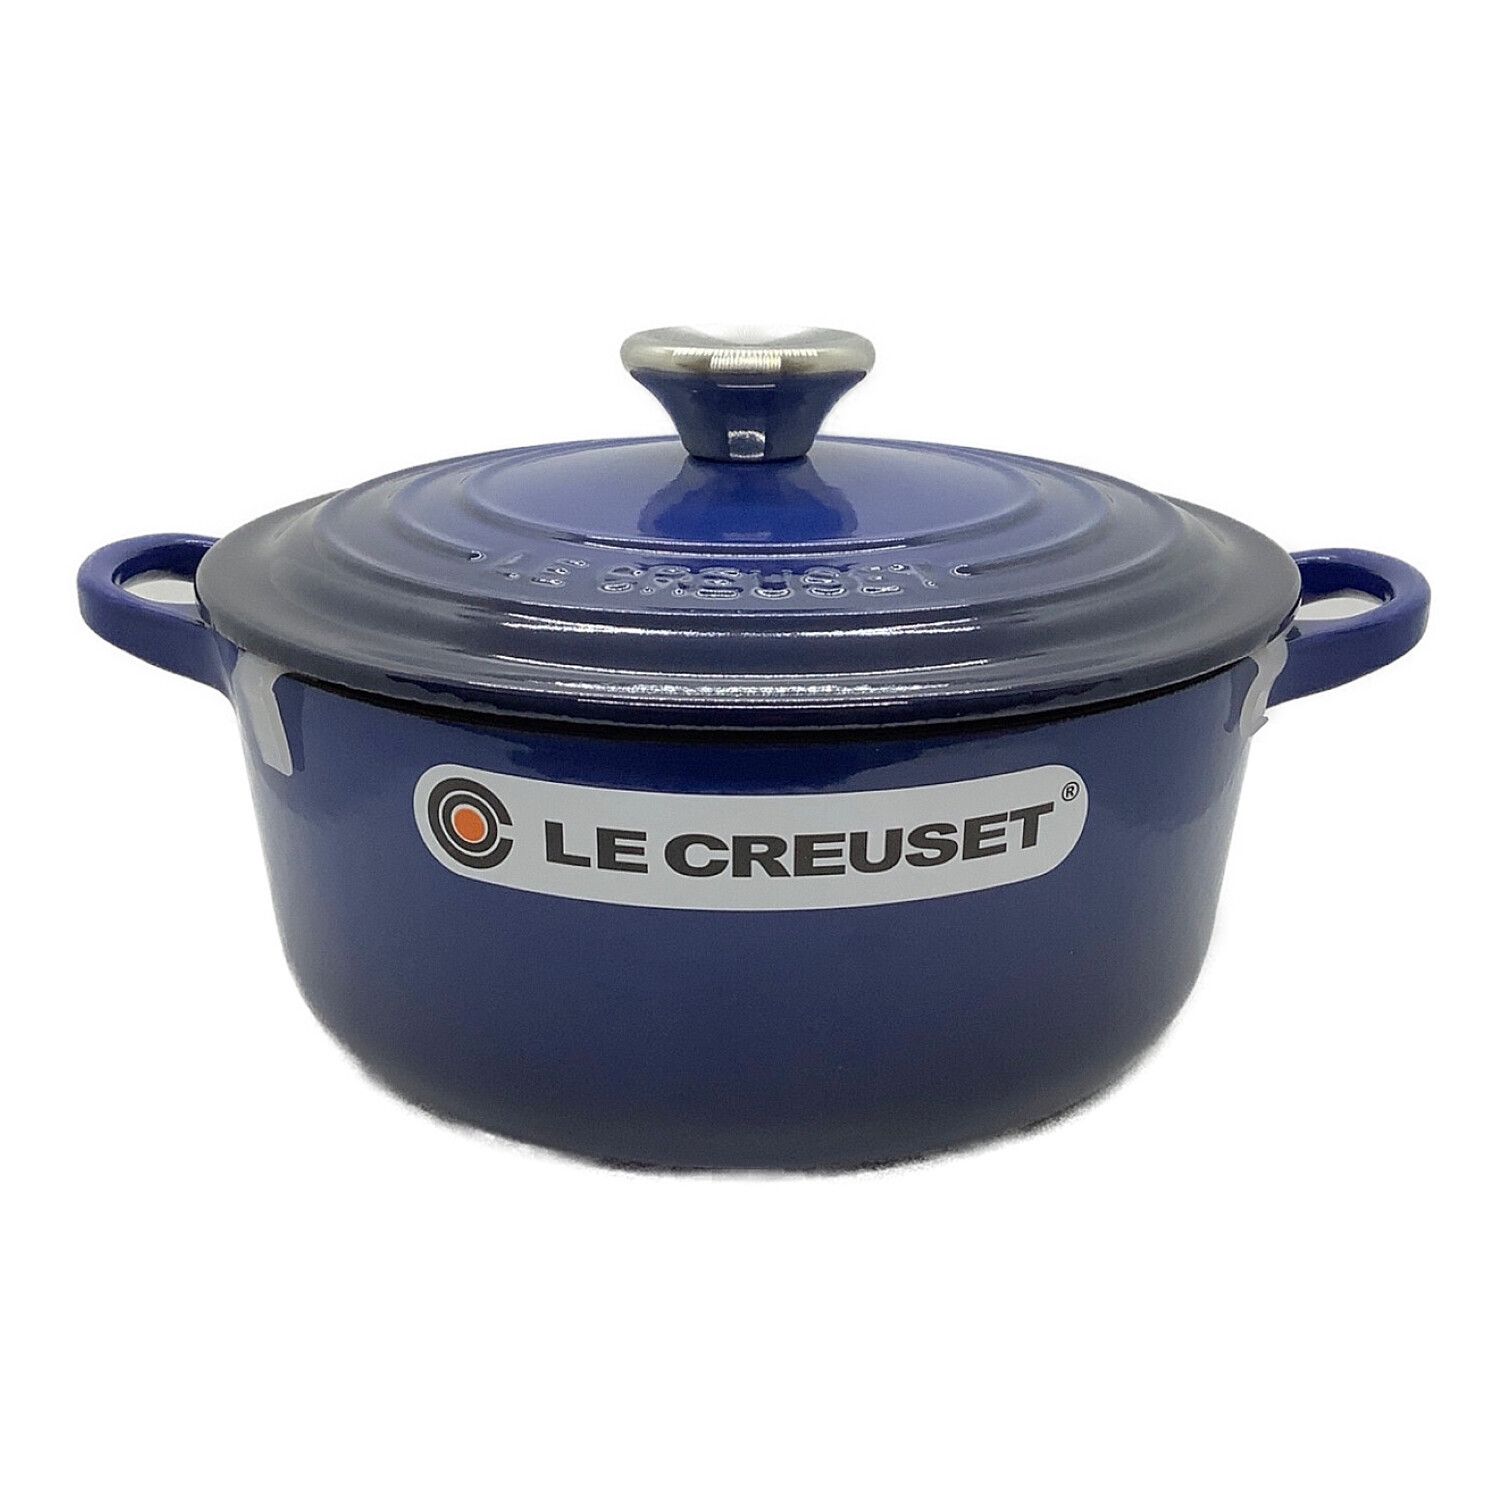 LE CREUSET (ルクルーゼ) 両手鍋 ブルー スチーマー器具付き ココット